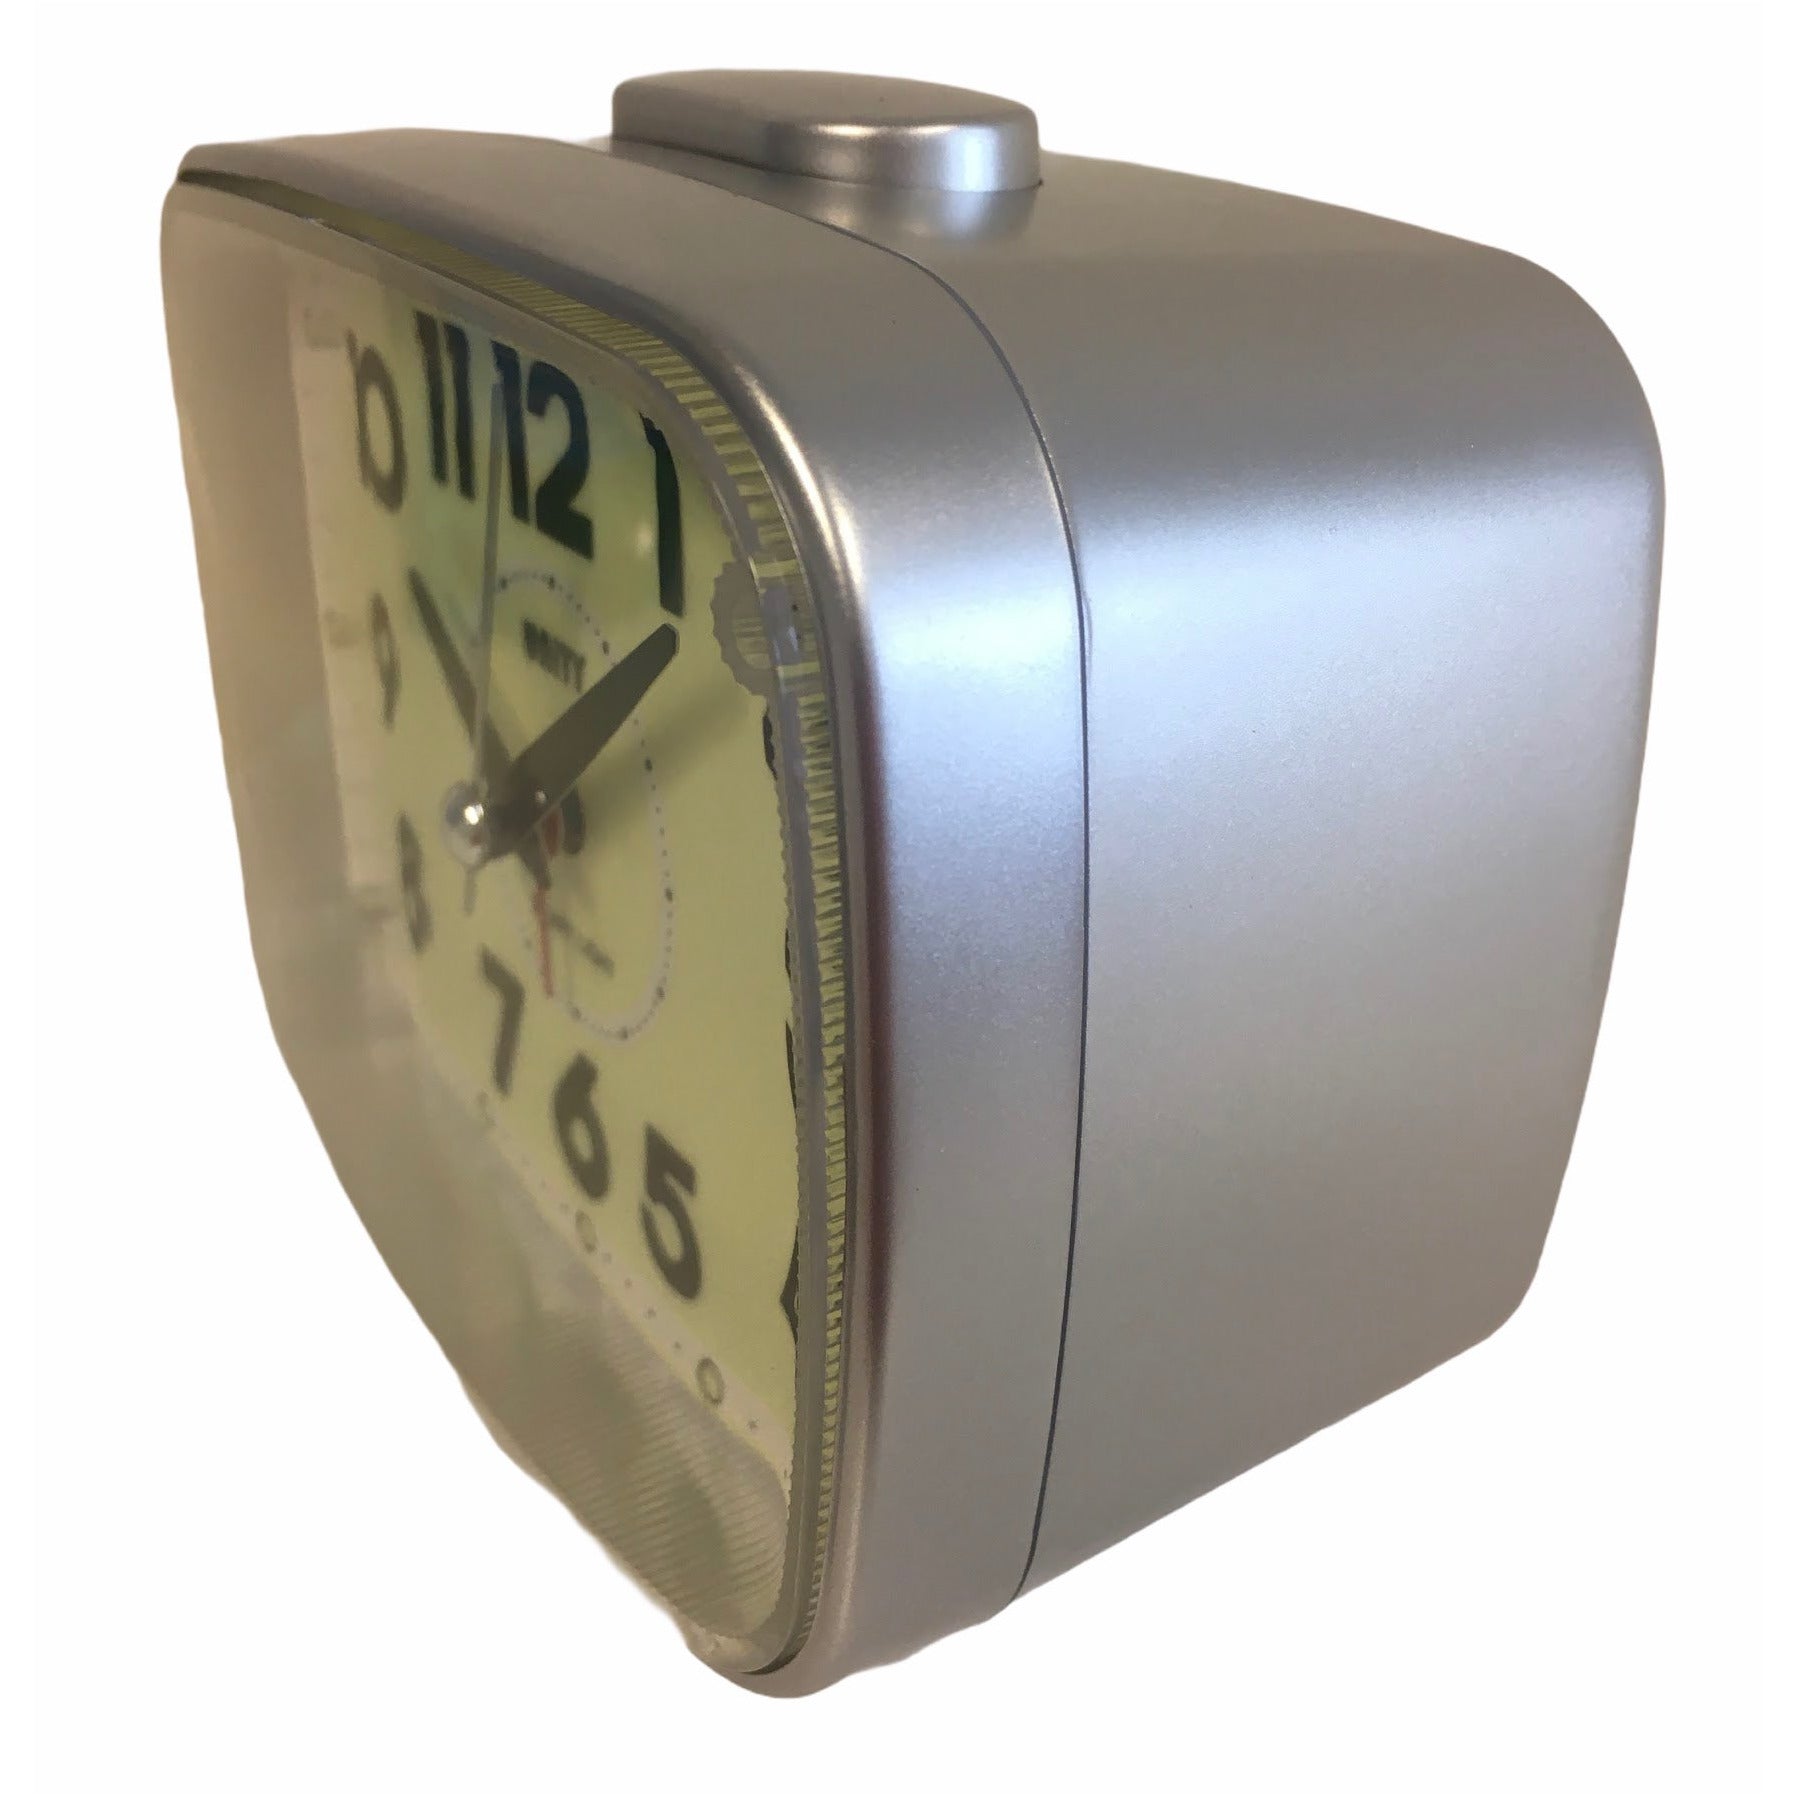 Super Luminous Alarm Clock in Silver